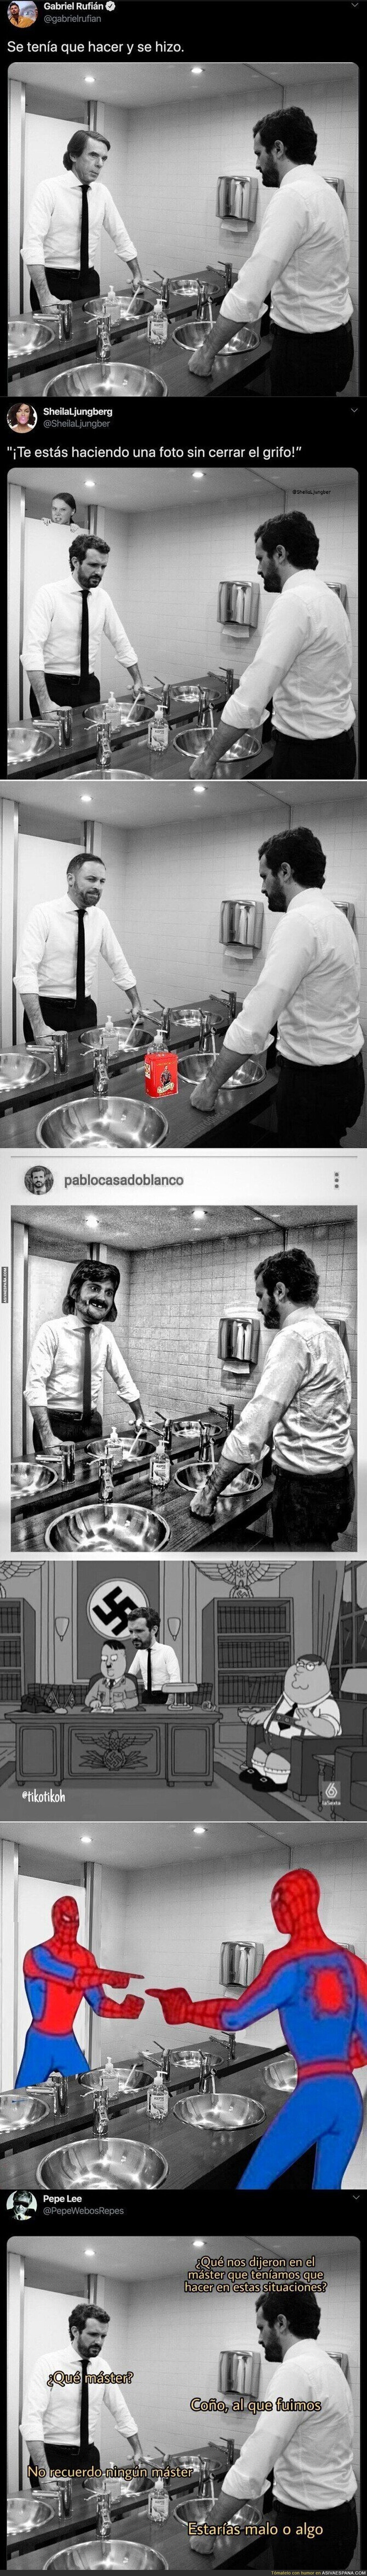 Pablo Casado posa en una polémica foto en el baño y Twitter saca todo su ingenio para hacer los mejores montajes